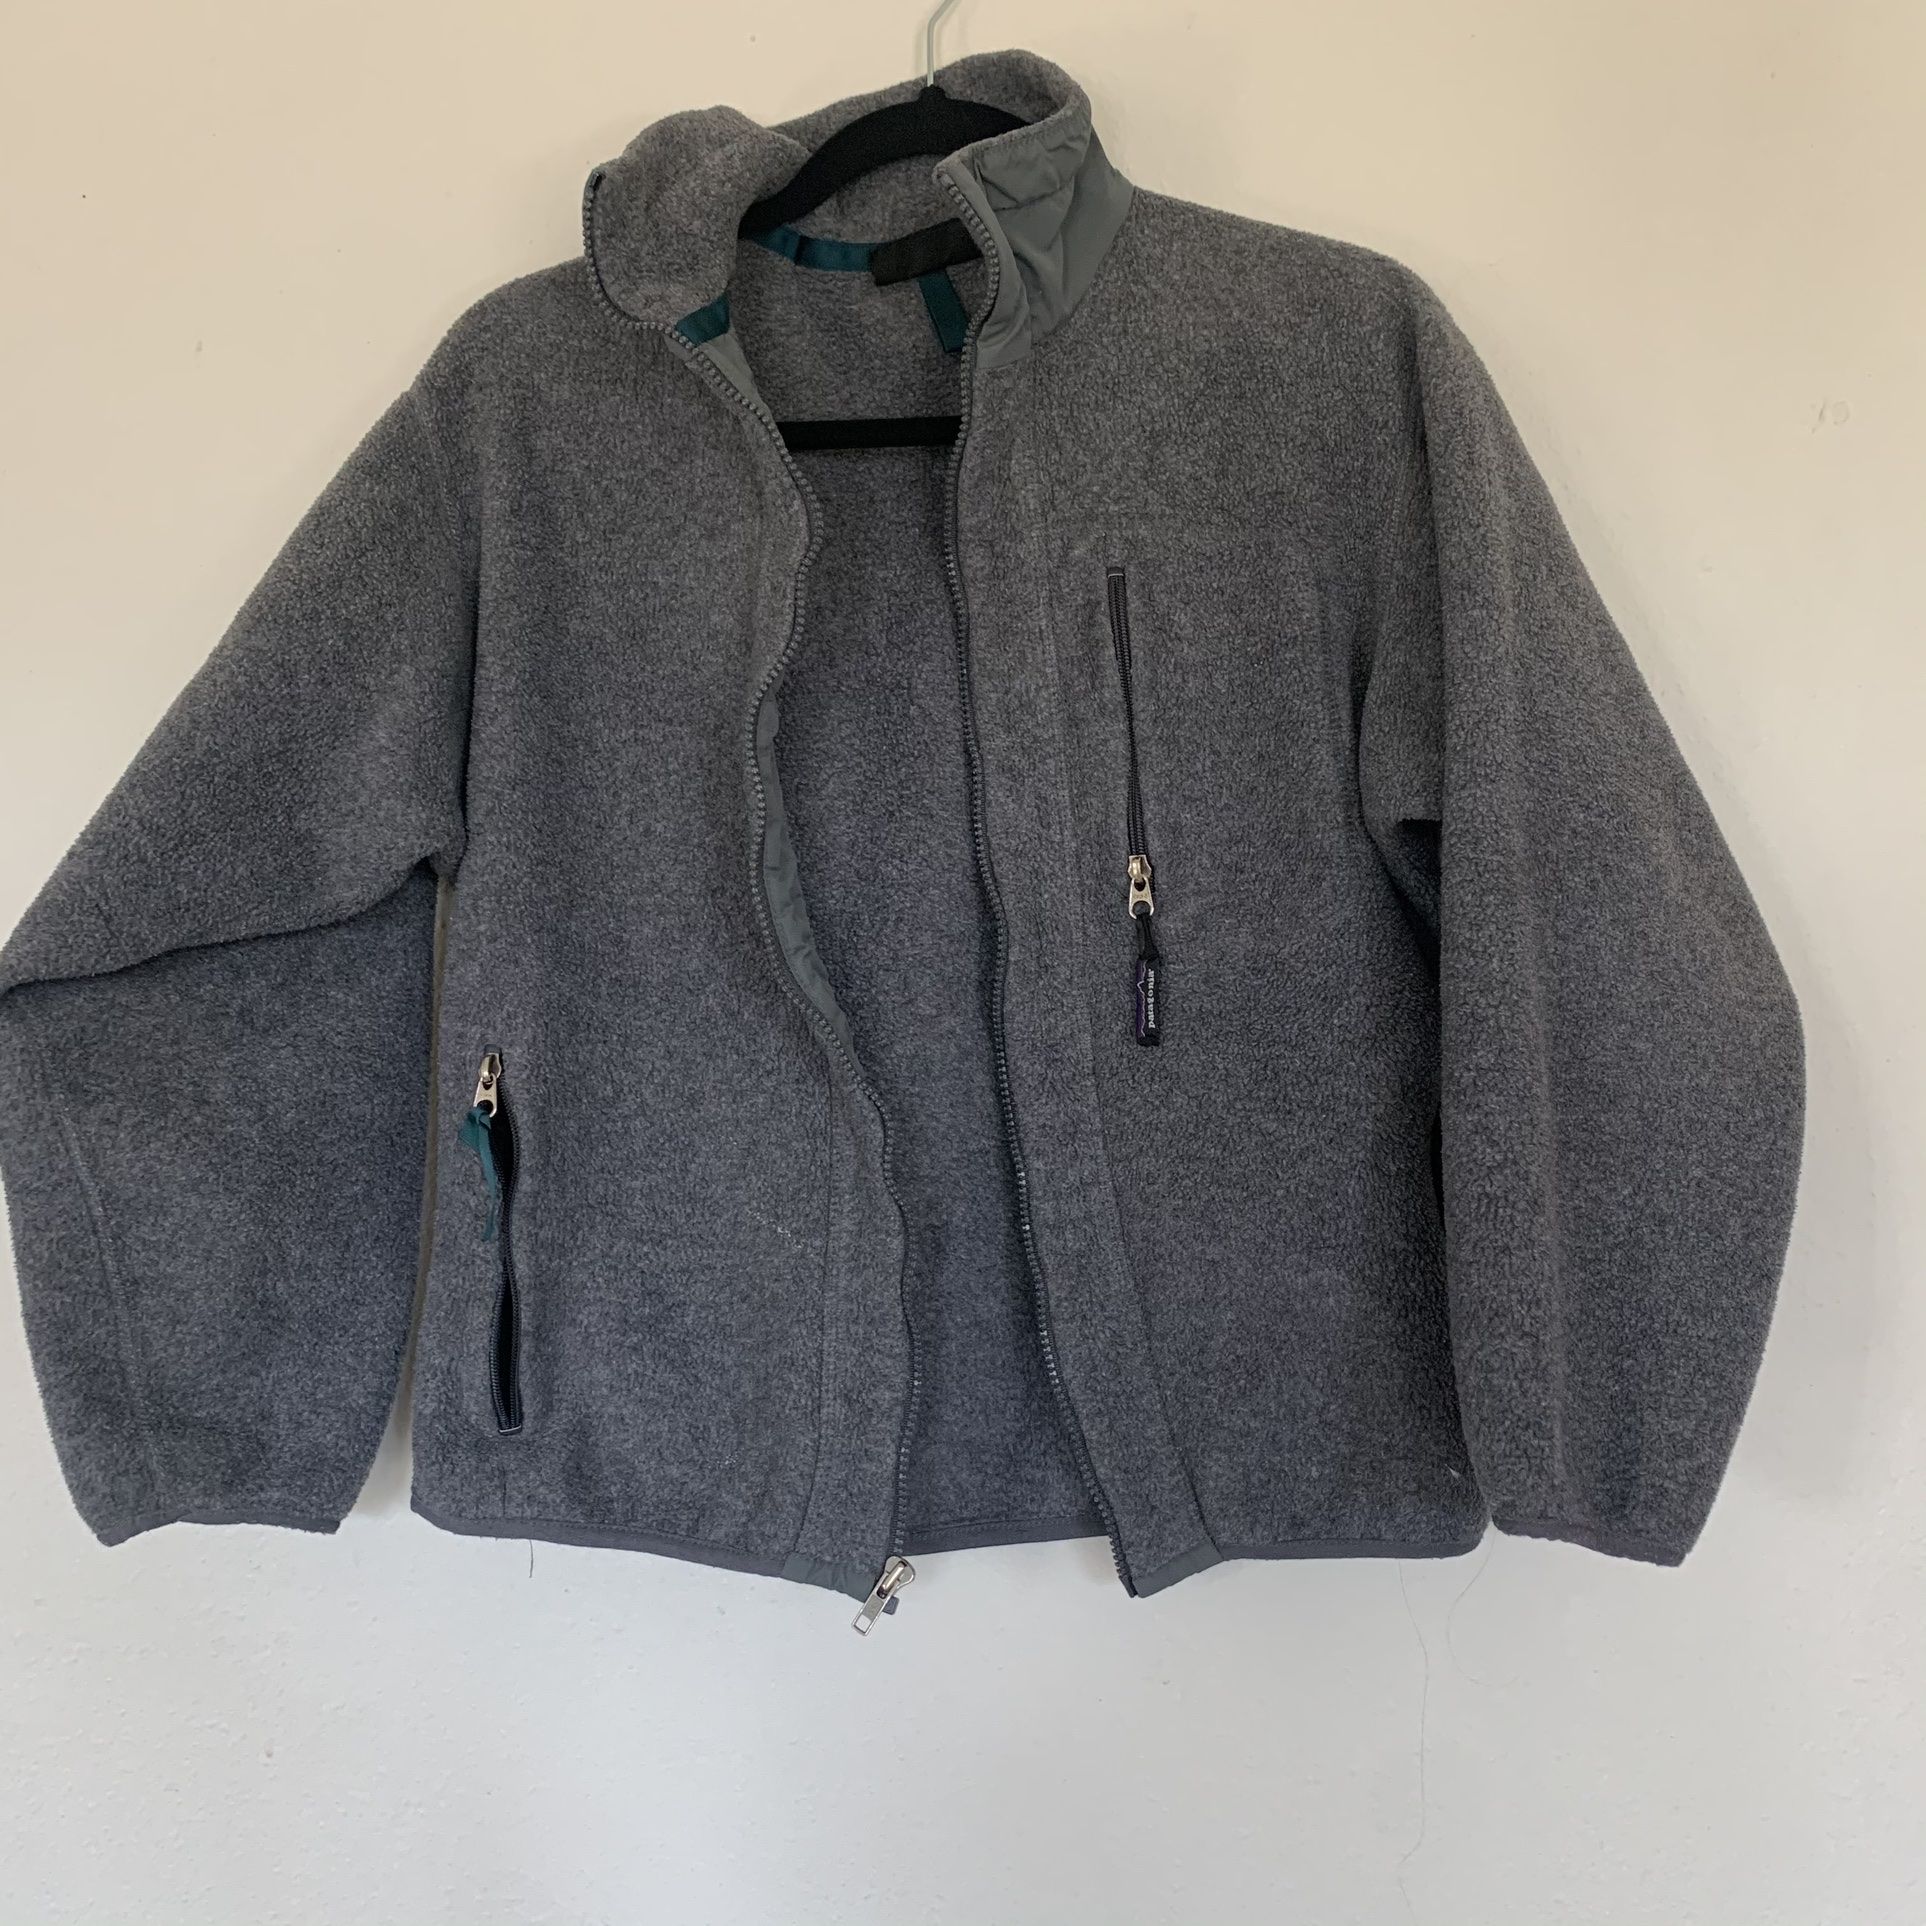 Women’s vintage Patagonia jacket